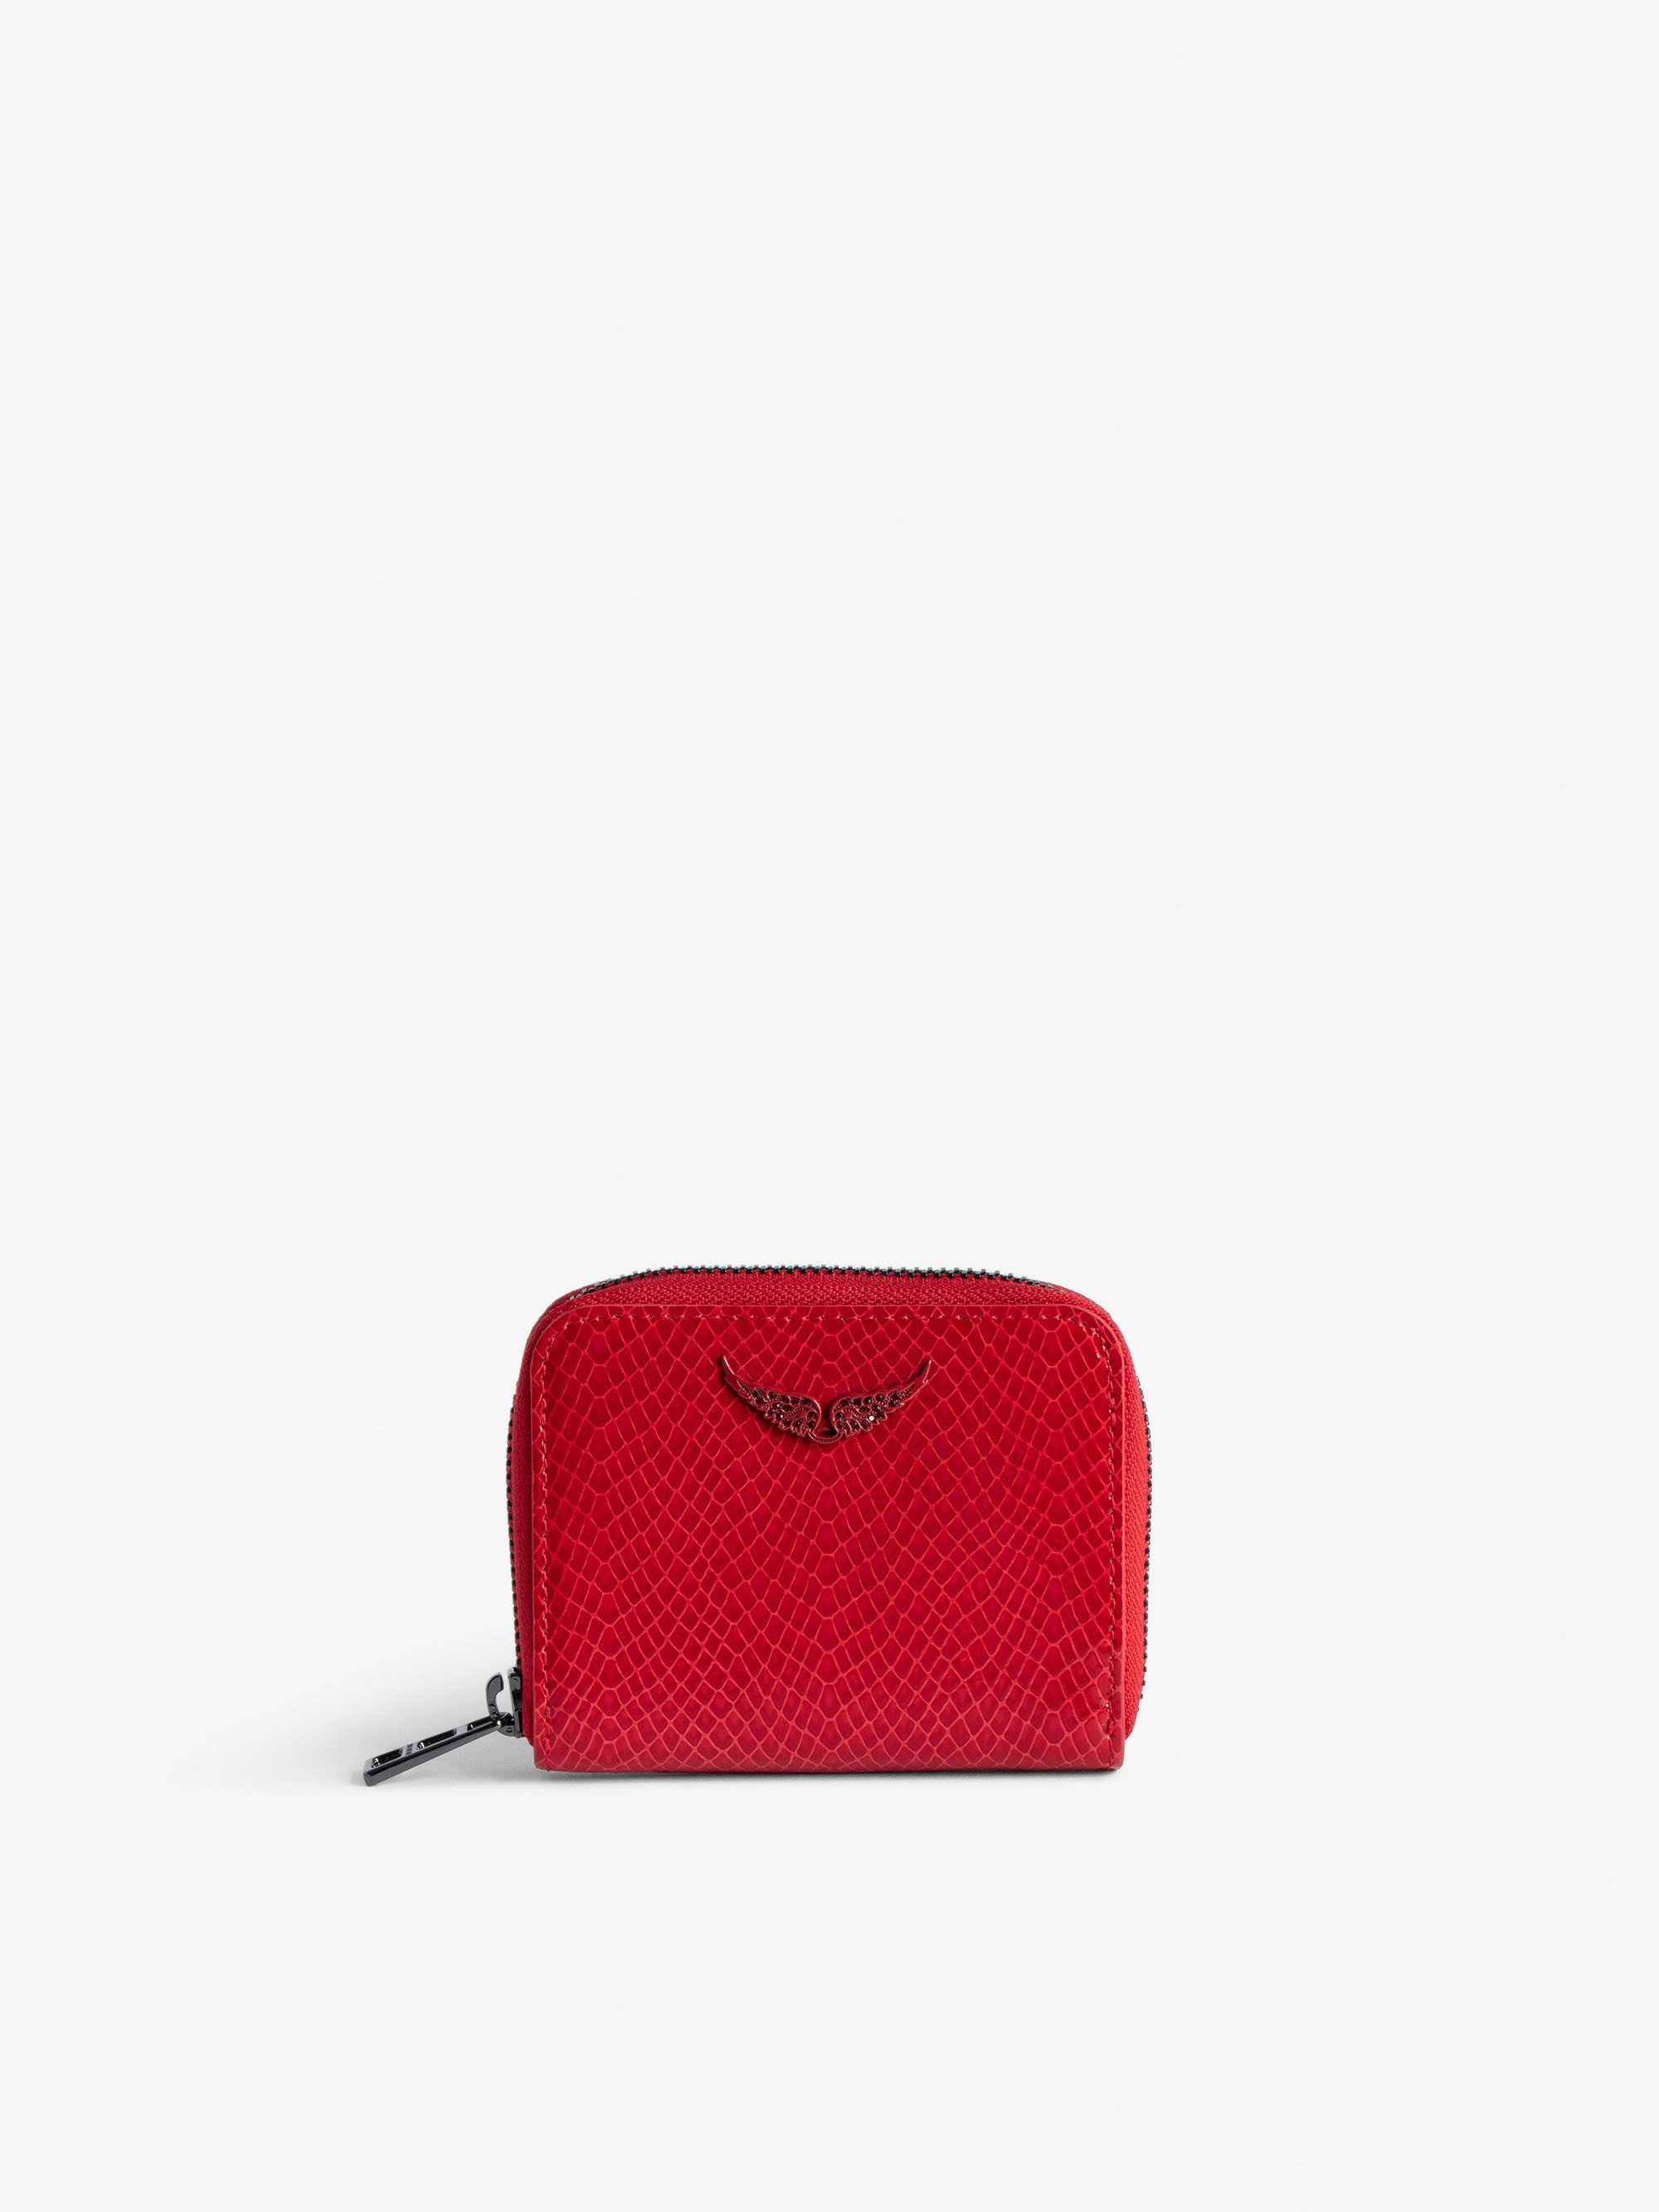 Portamonete Mini ZV Glossy Wild Goffrato - Portafoglio in pelle lucida rosso effetto pitone con charm ali in strass da donna.